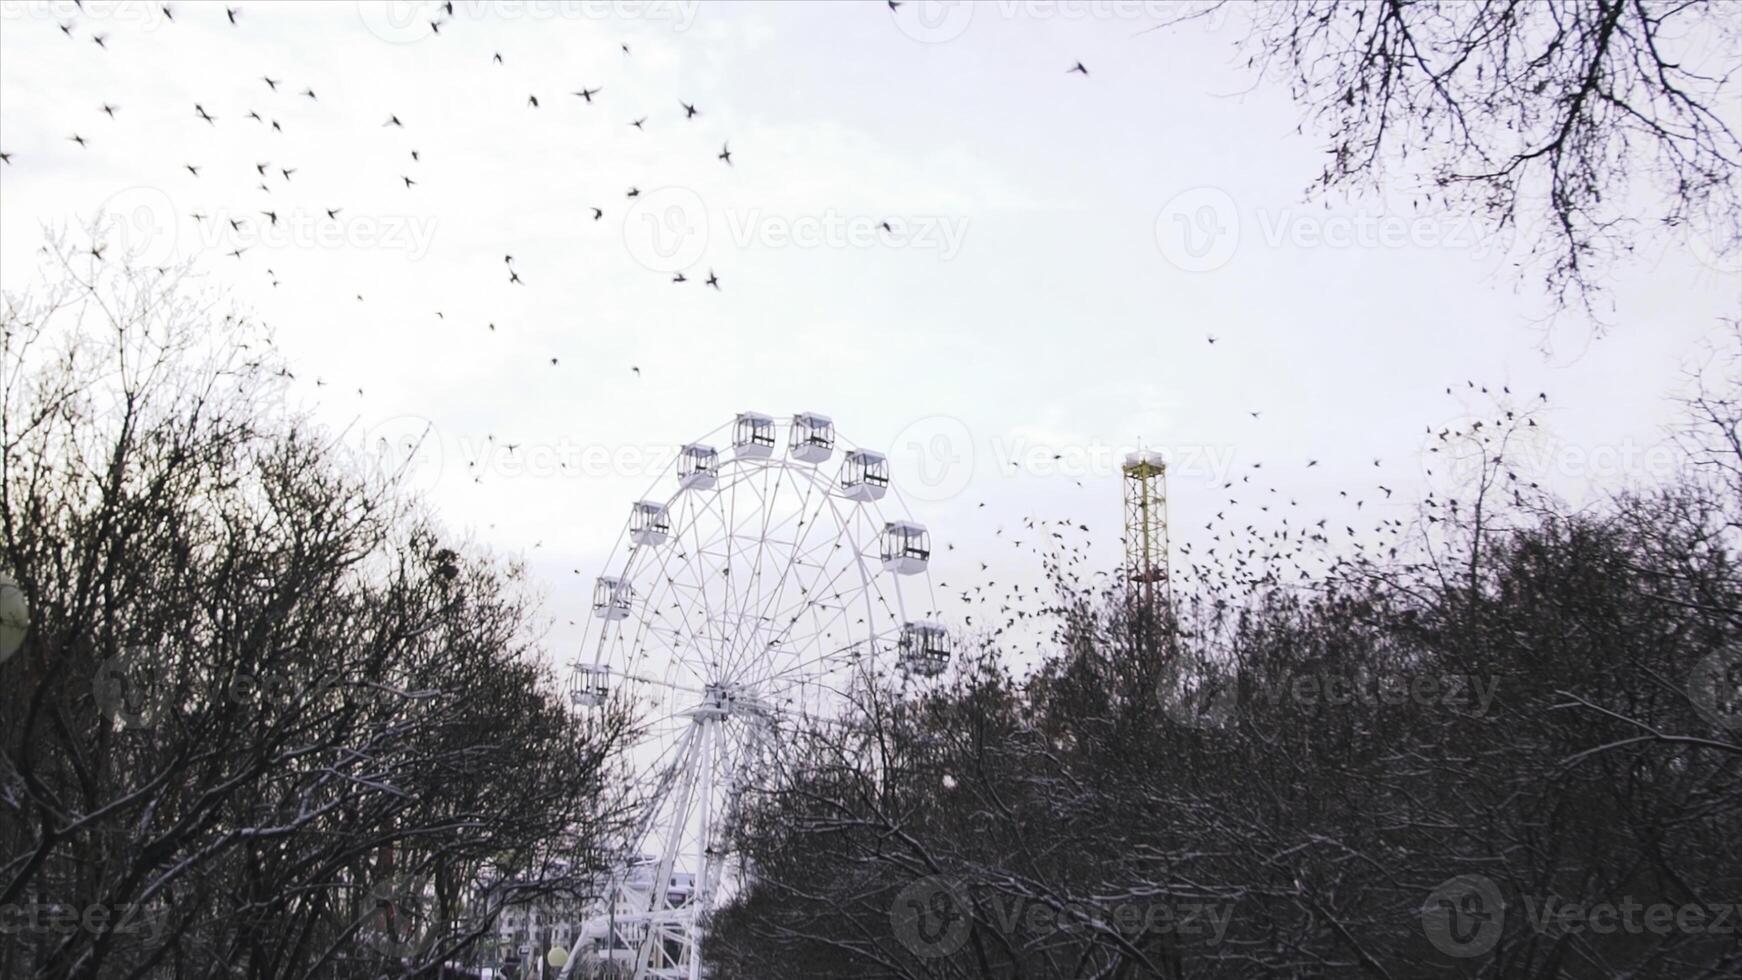 inmóvil ferris rueda en el diversión parque en gris cielo antecedentes. existencias. hermosa rebaño de aves volador lejos desde el diversión parque en otoño sin gente. foto